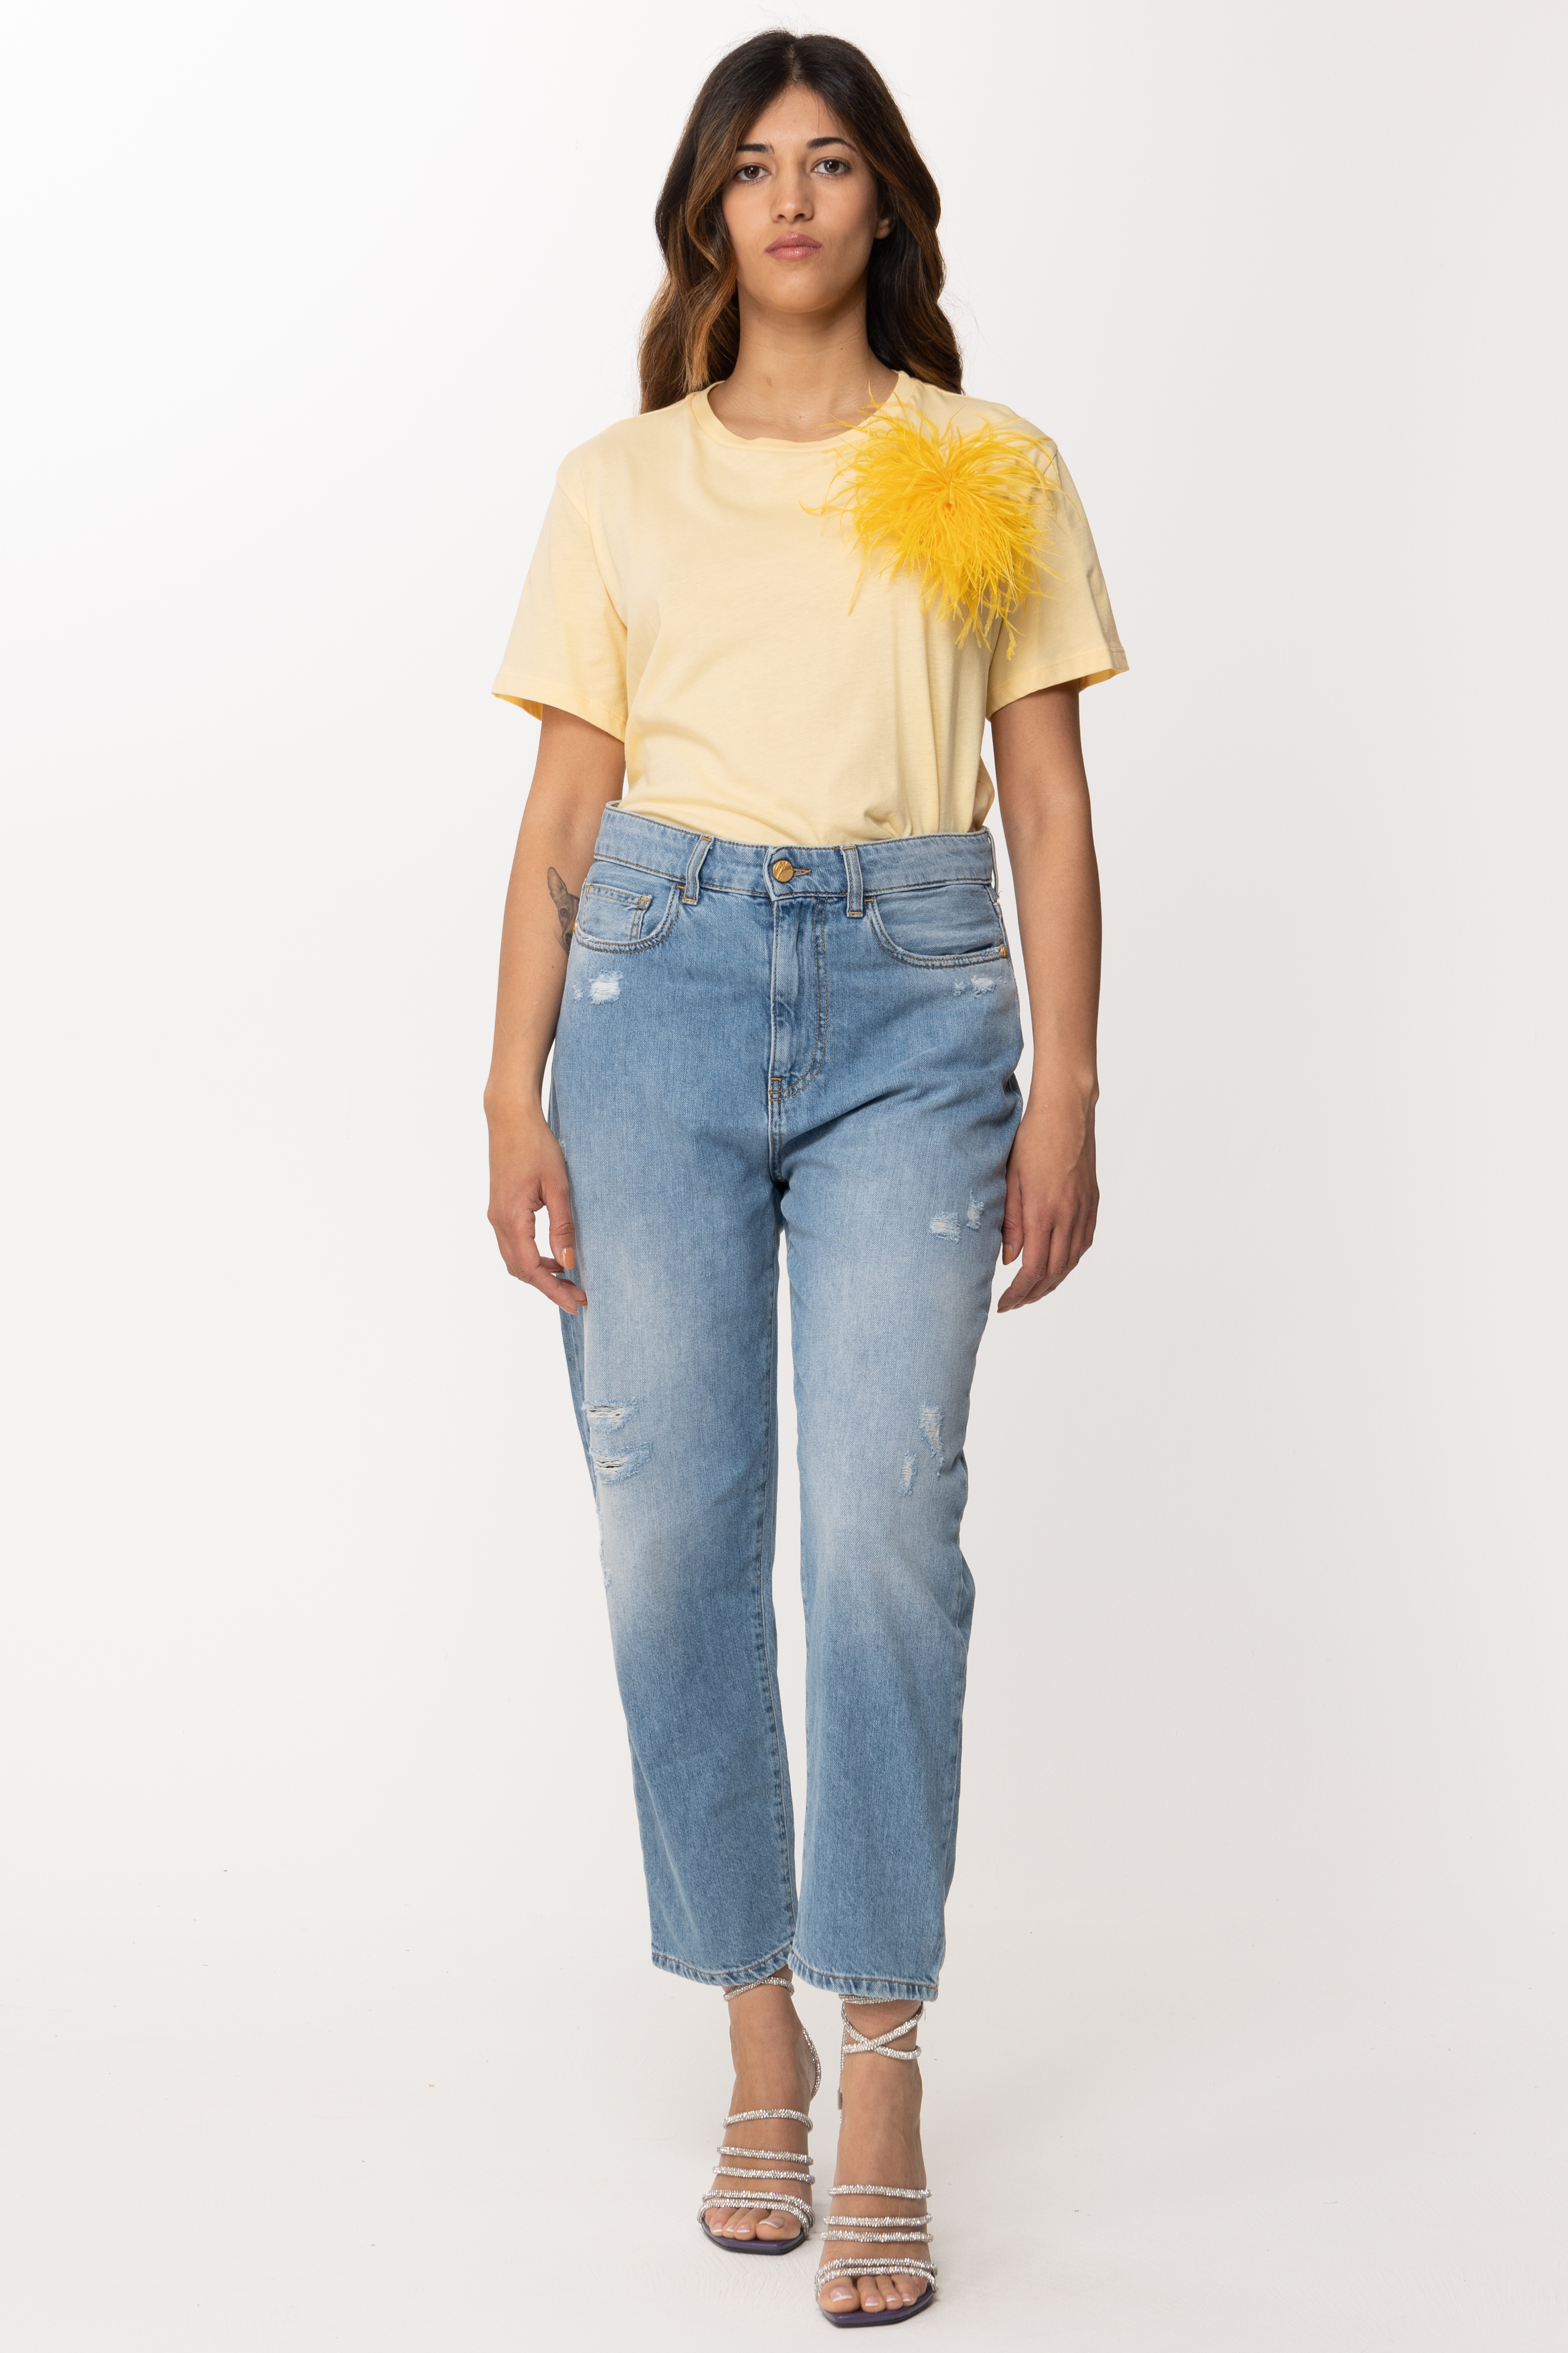 Vista previa: Patrizia Pepe Camiseta con inserto de plumas Clarity Yellow